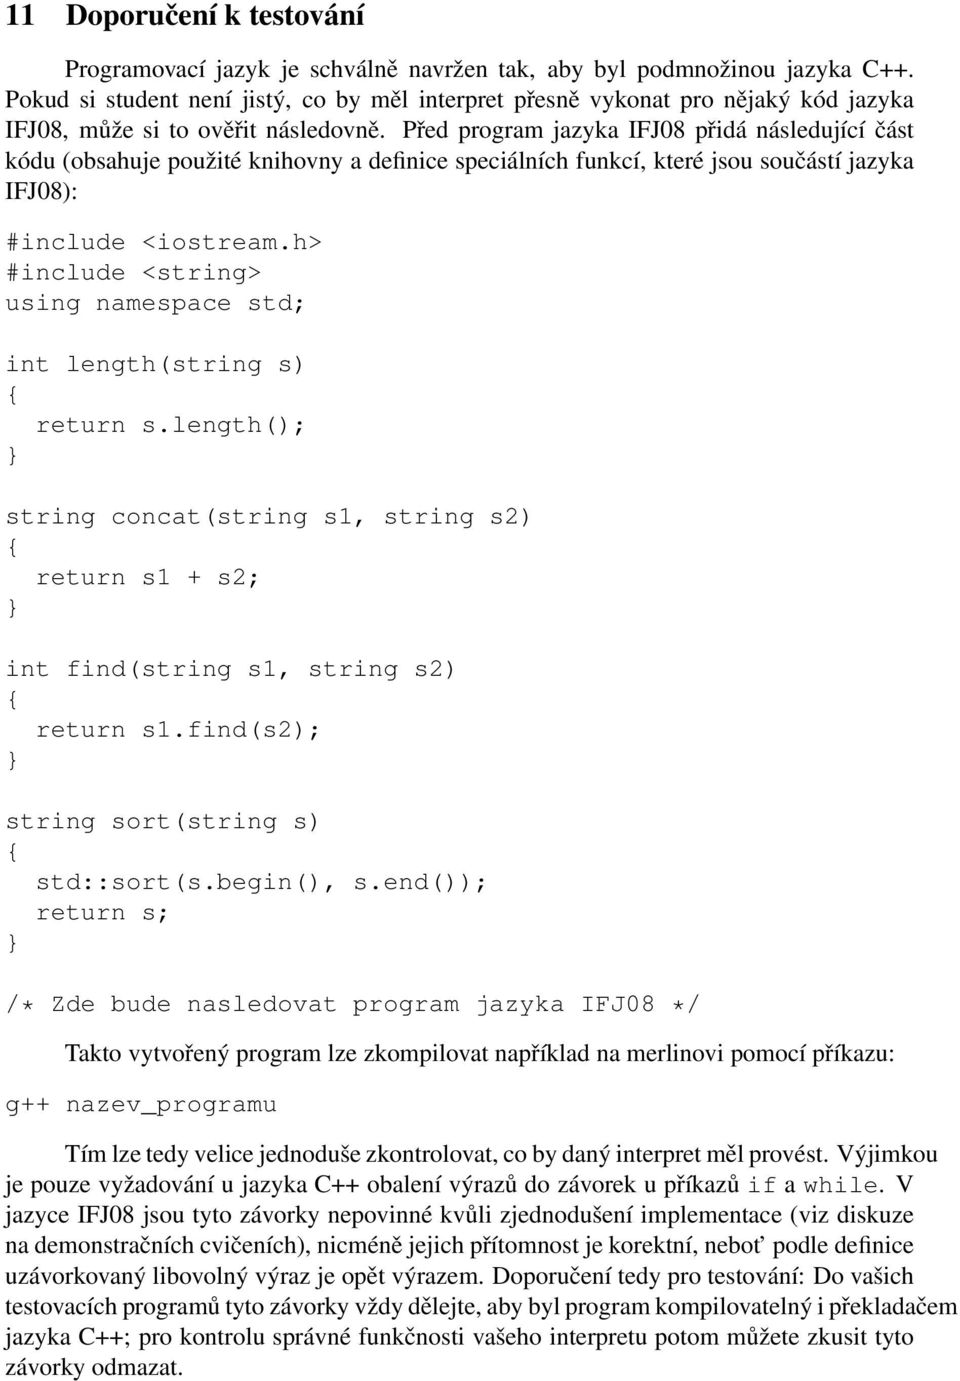 Před program jazyka IFJ08 přidá následující část kódu (obsahuje použité knihovny a definice speciálních funkcí, které jsou součástí jazyka IFJ08): #include <iostream.